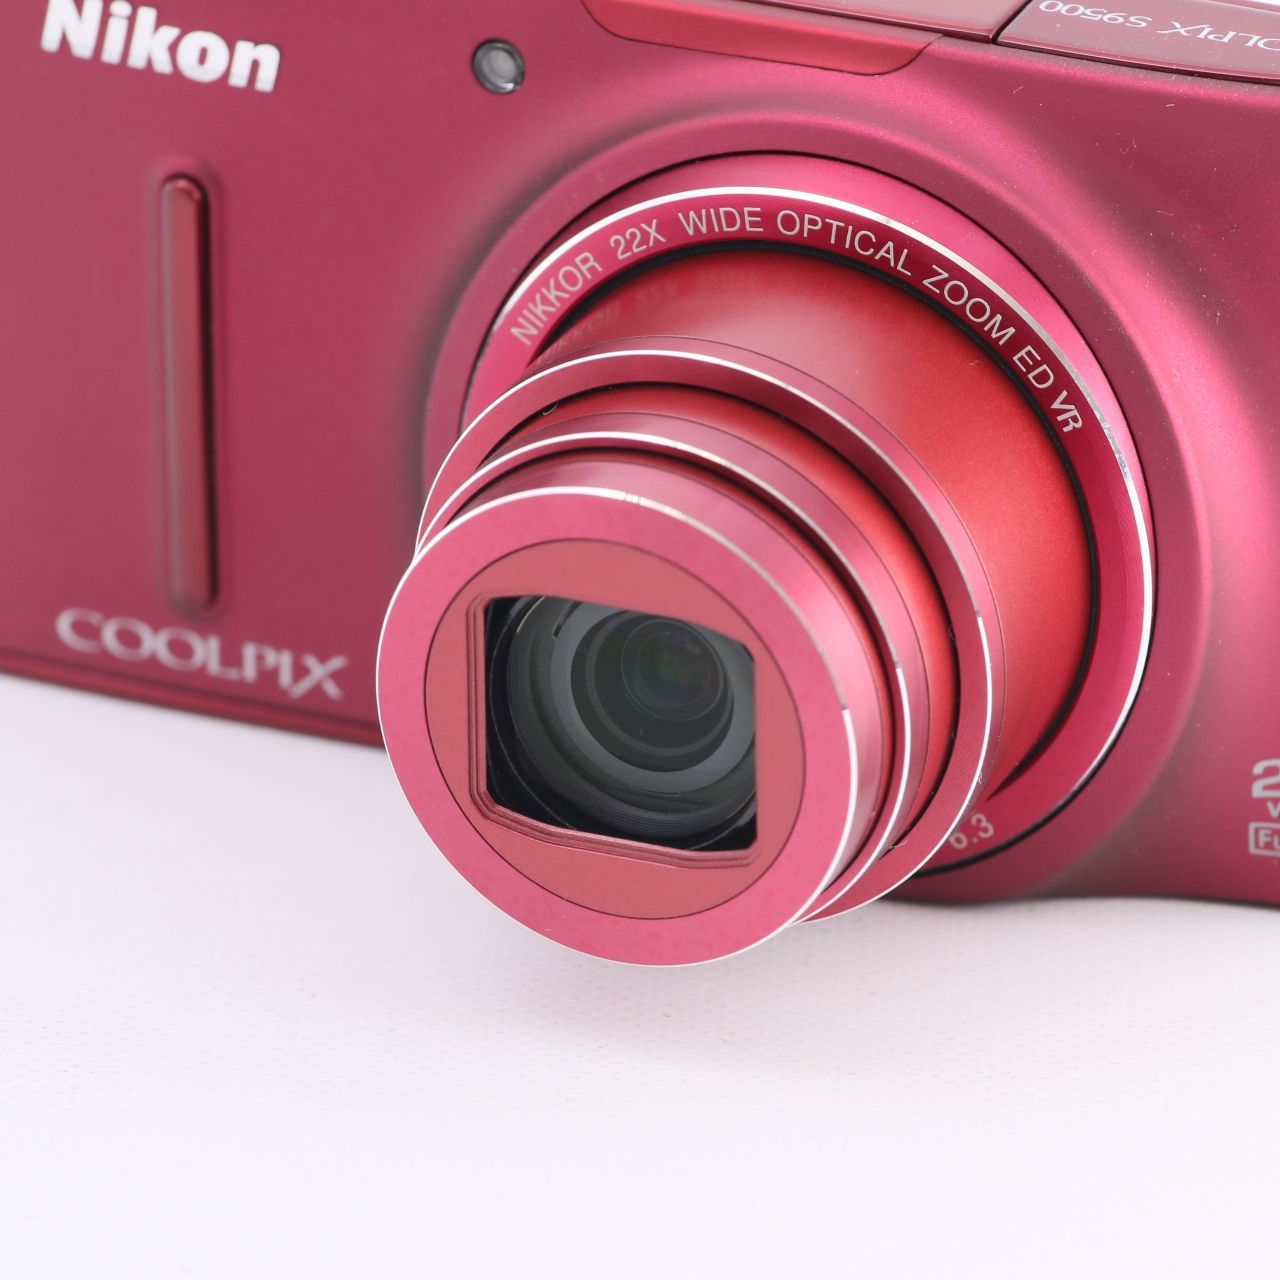 Nikon デジタルカメラ COOLPIX S9500 光学22倍ズーム Wi-Fi対応